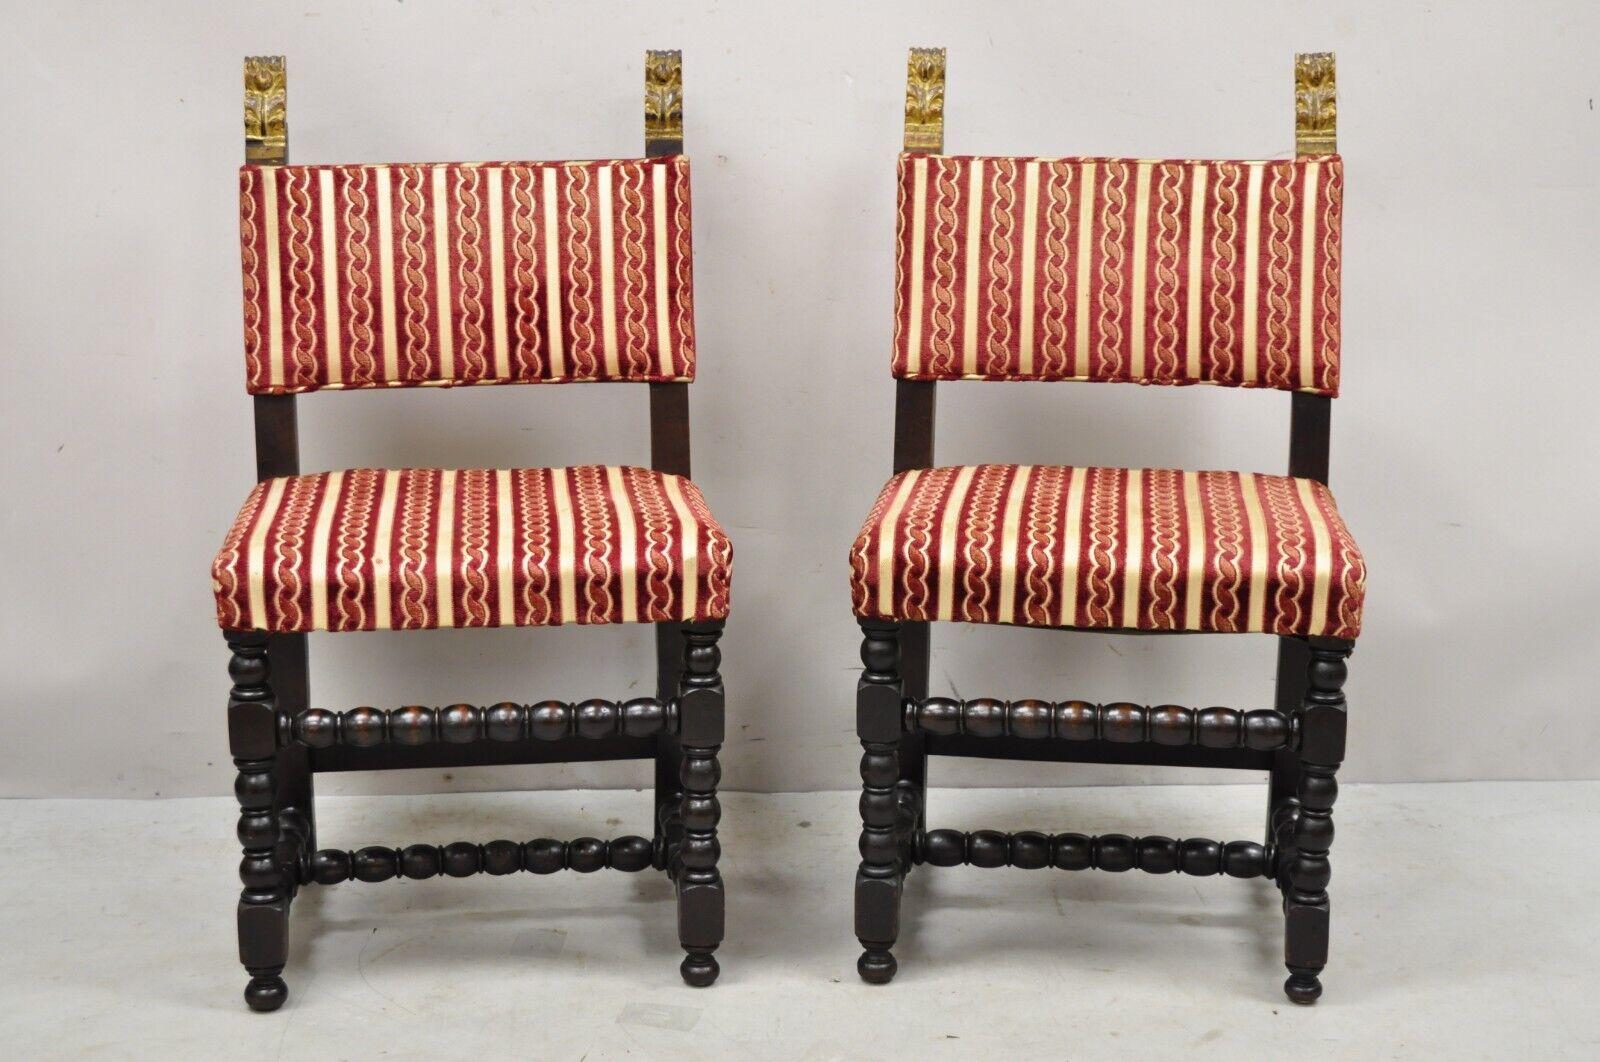 Anciennes petites chaises d'appoint de style jacobéen en noyer sculpté - une paire. L'article présenté est une belle petite taille, cadre sculpté au tour et base de civière, fleurons sculptés dorés, cadres en bois massif, très belle paire ancienne,